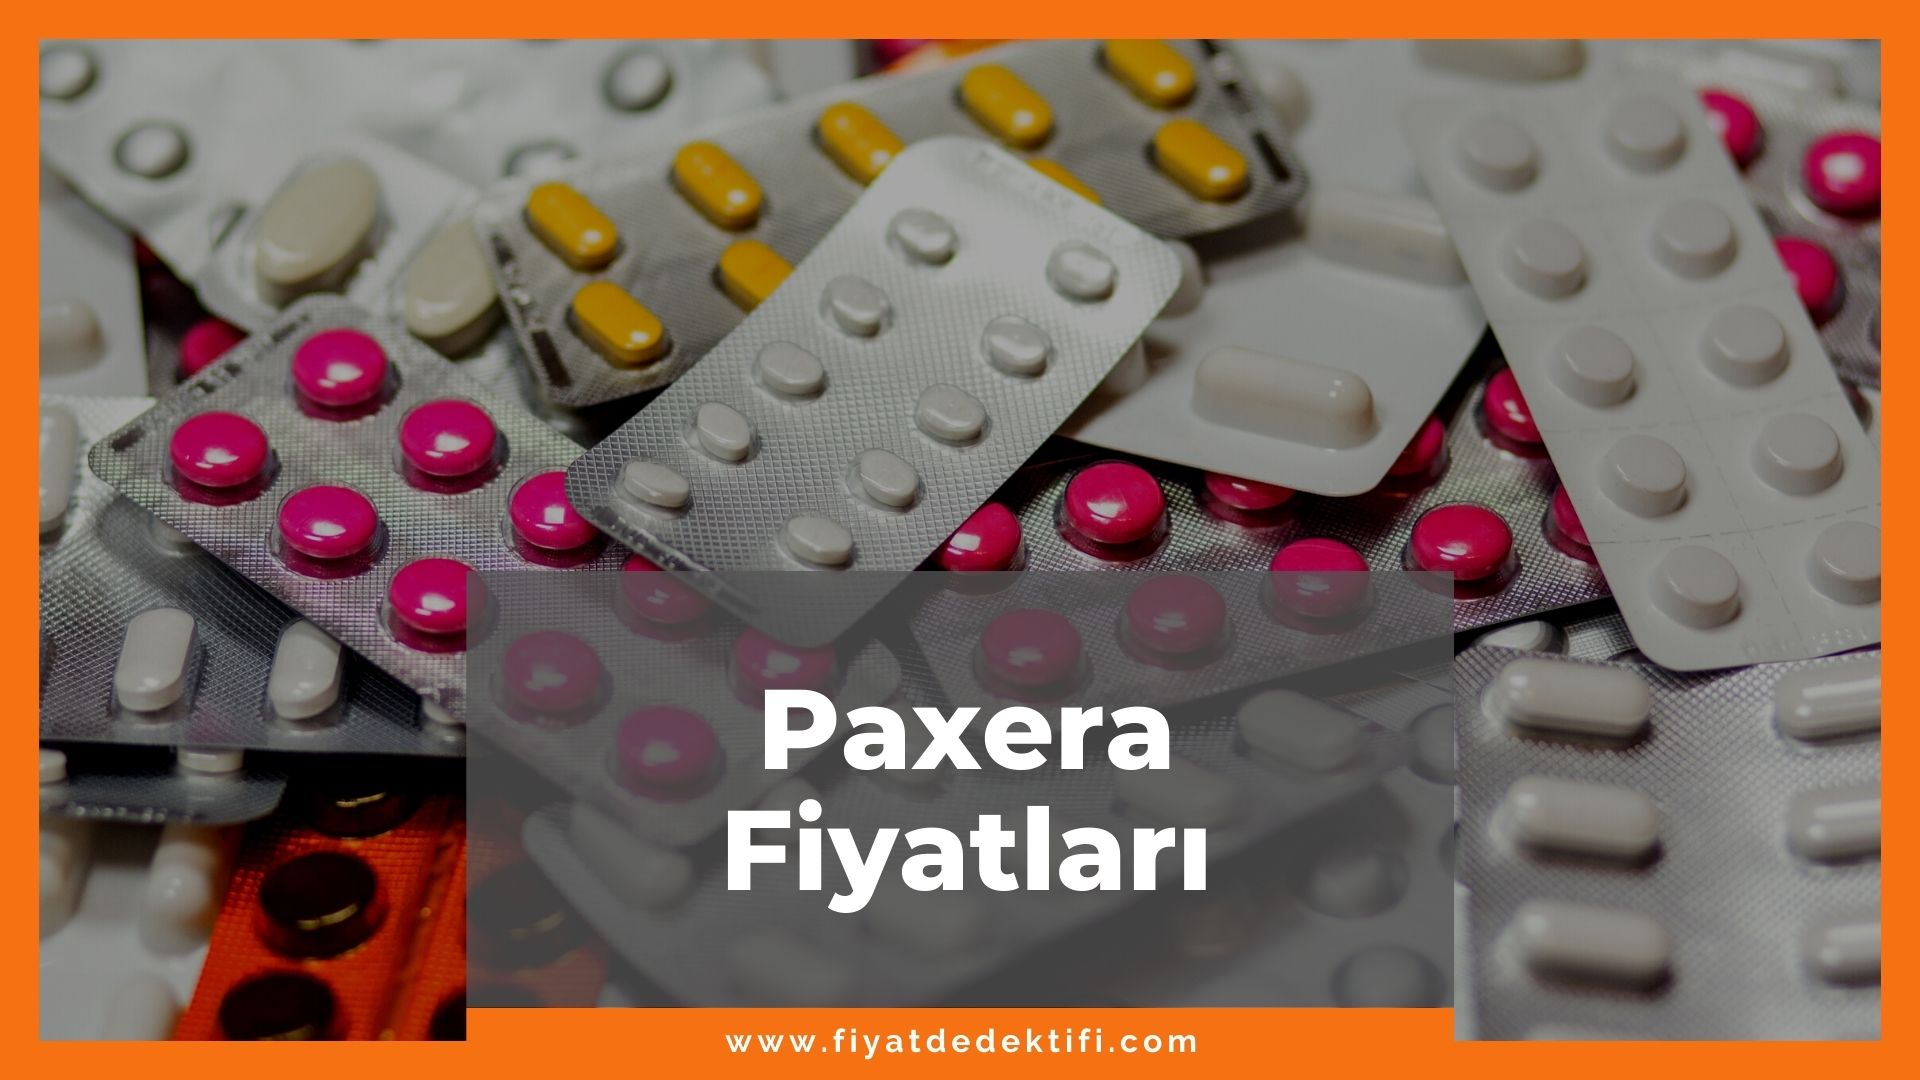 Paxera Fiyat 2021, Paxera 10 mg 20 mg 30 mg 40 mg Fiyatı, paxera zamlandı mı, paxera zamlı fiyat ne kadar kaç tl oldu